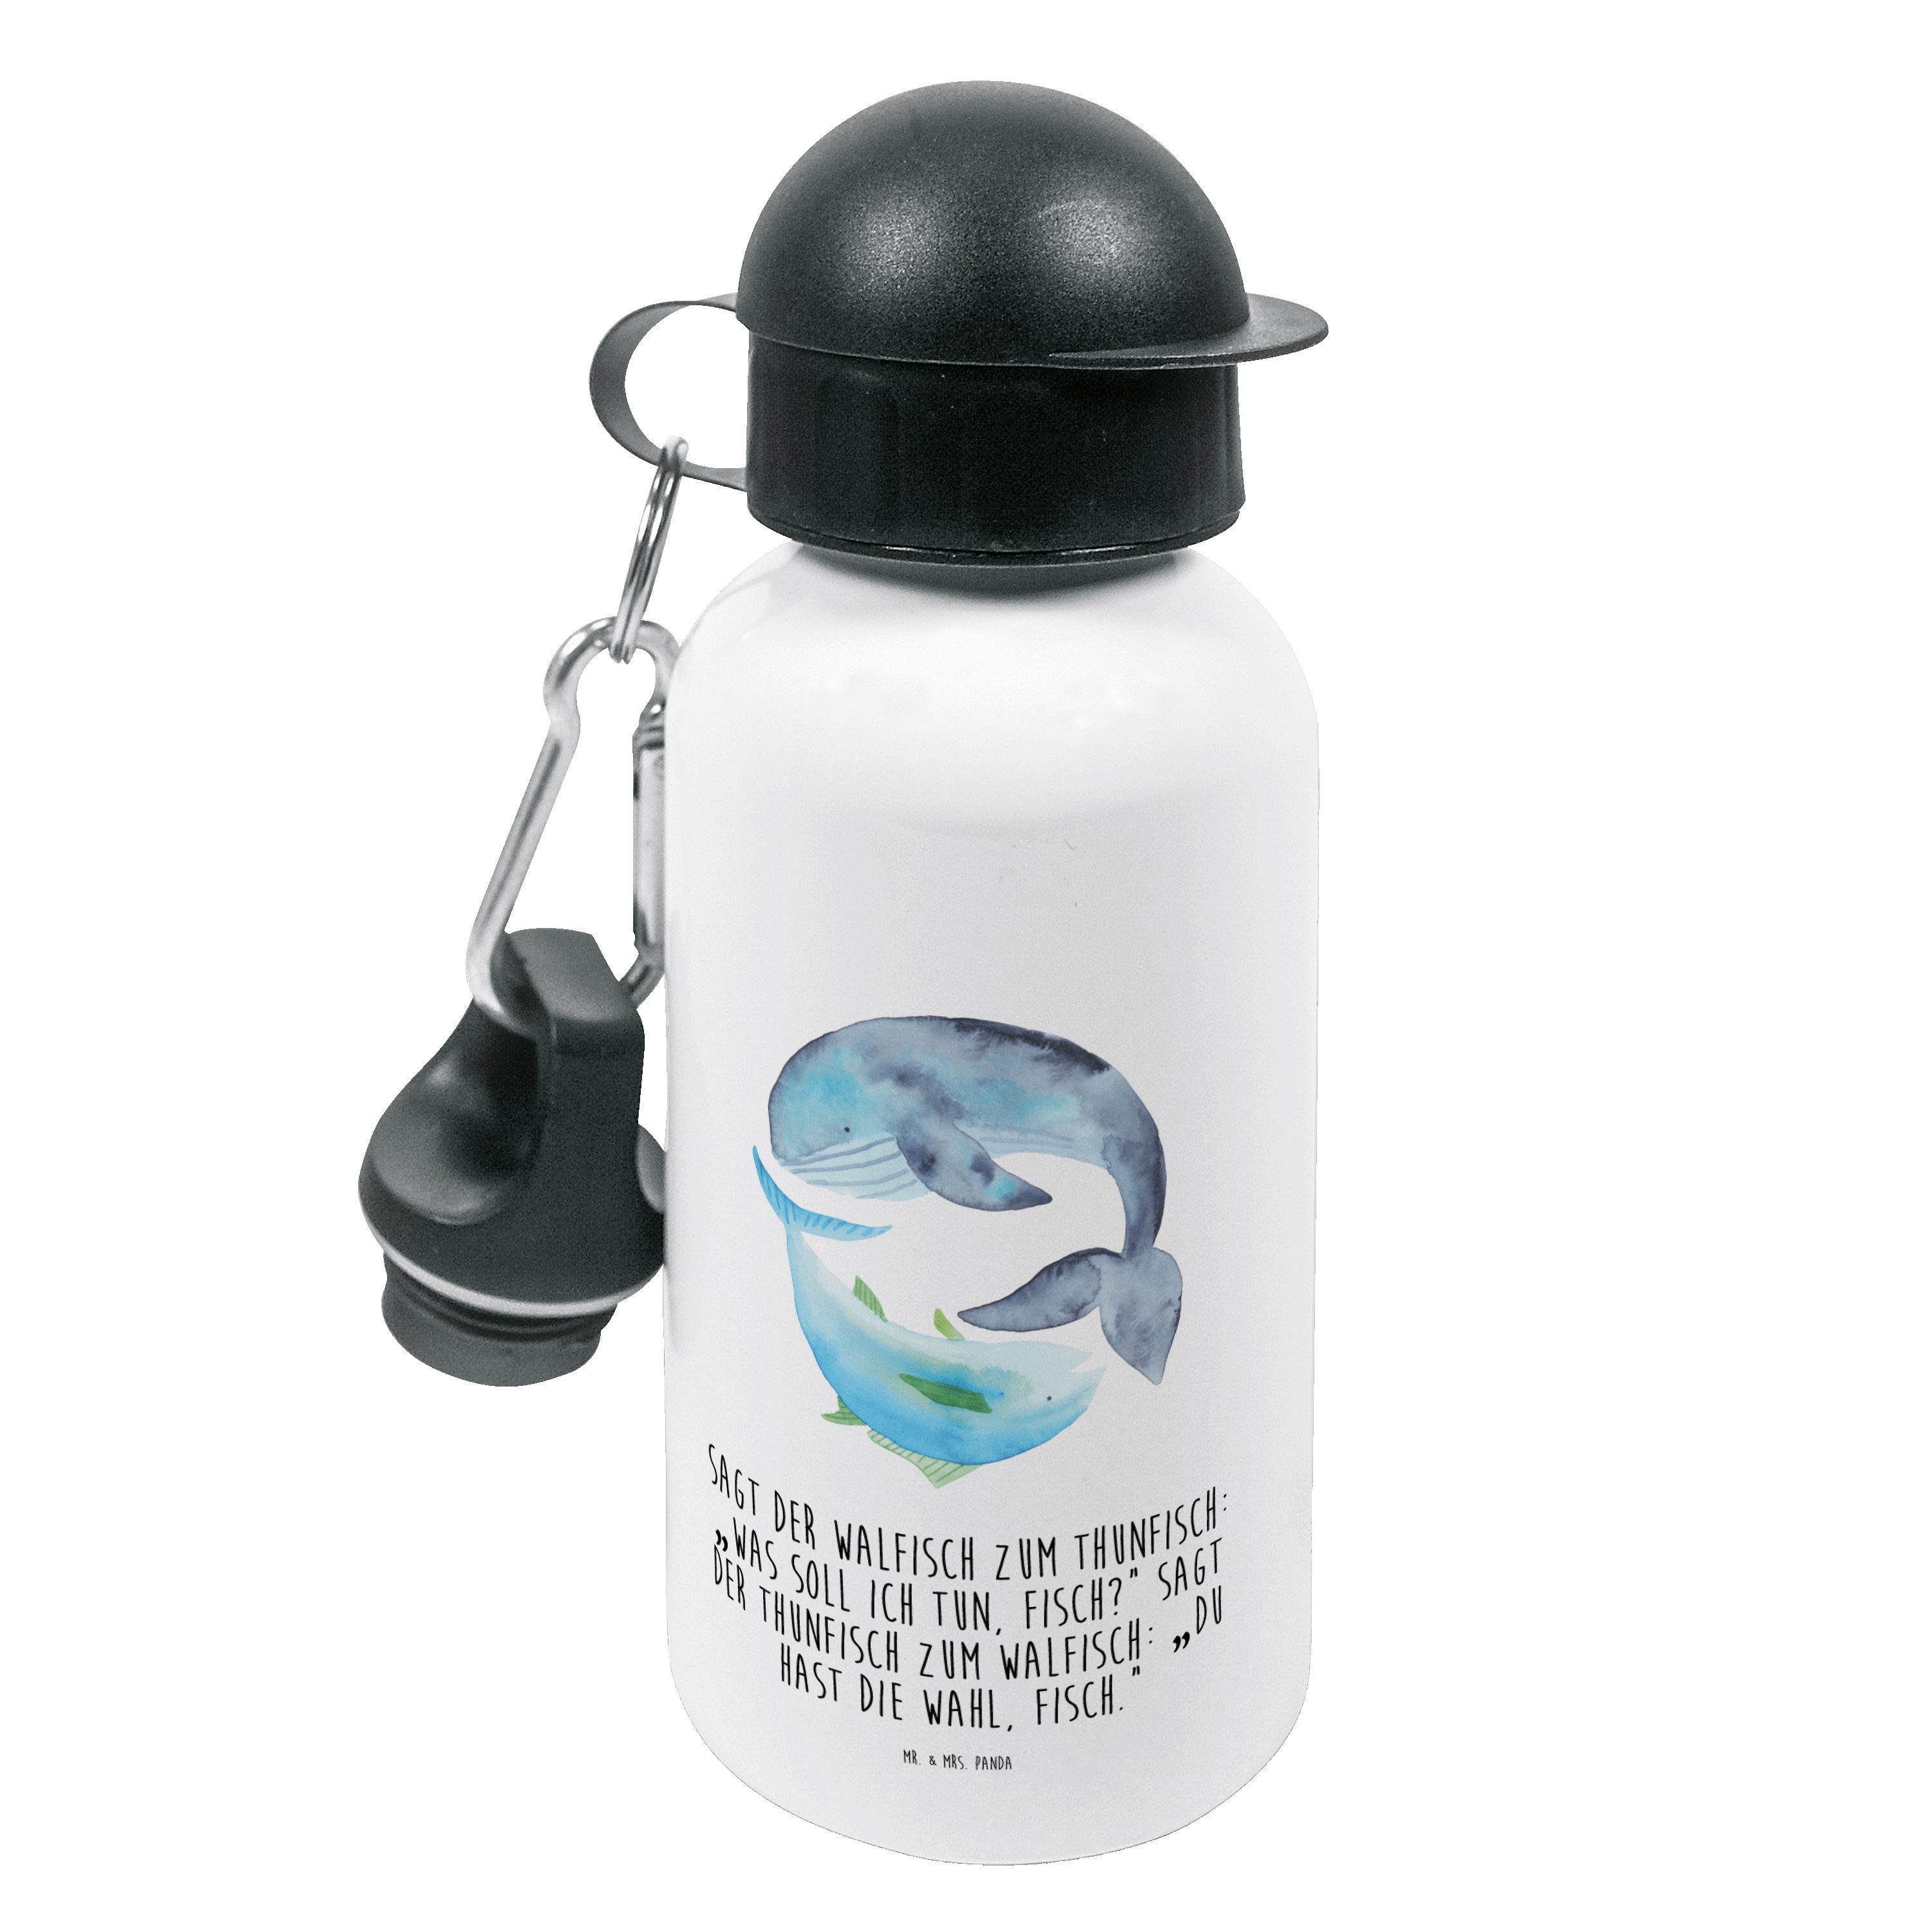 Mr. & Mrs. Panda Trinkflasche Walfisch & Thunfisch - Weiß - Geschenk, Tunfisch, Kindertrinkflasche